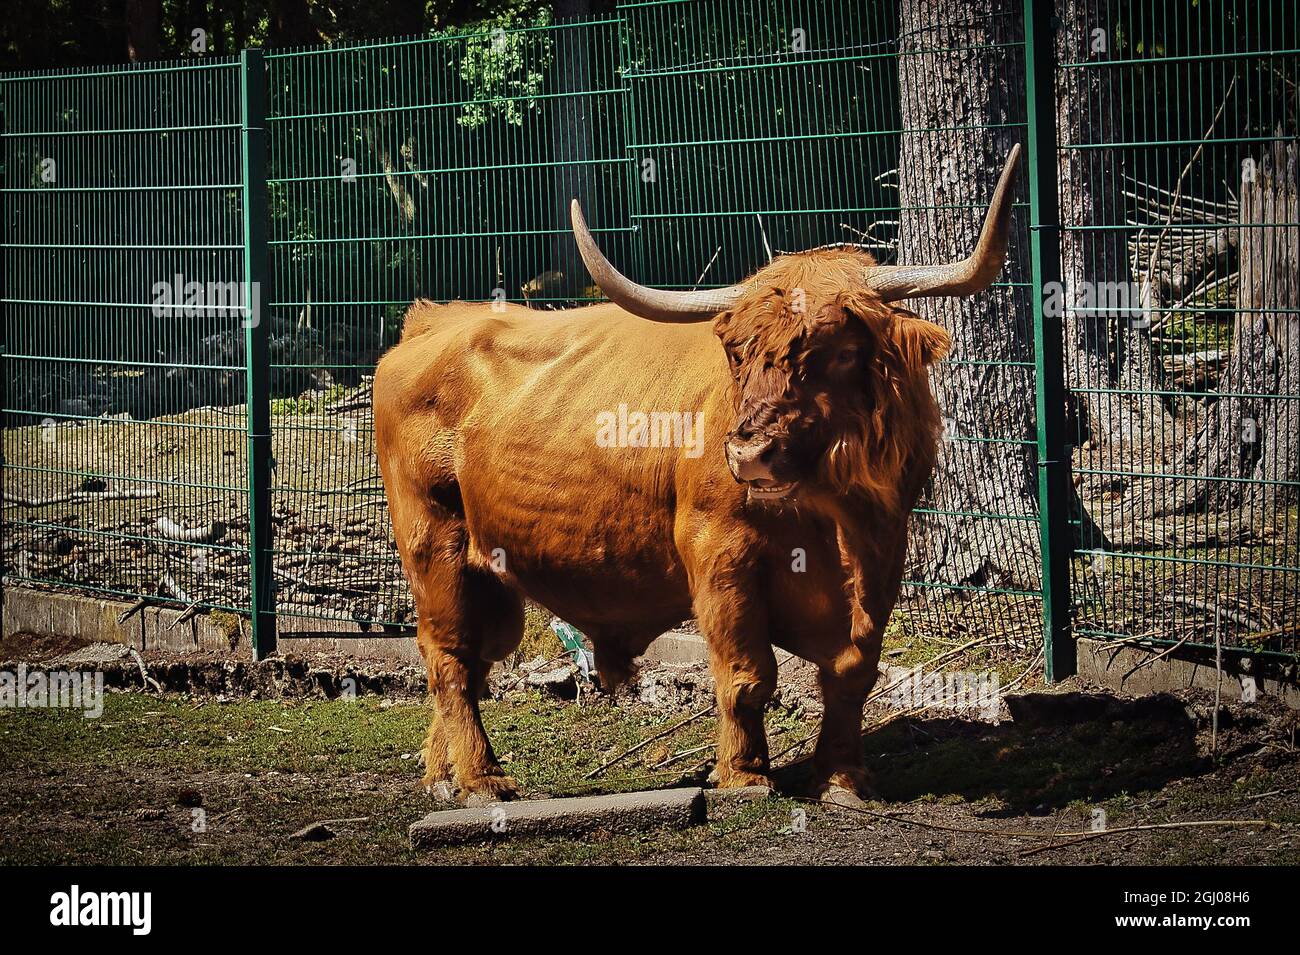 Bisonte nello zoo in uno sguardo drammatico Foto Stock